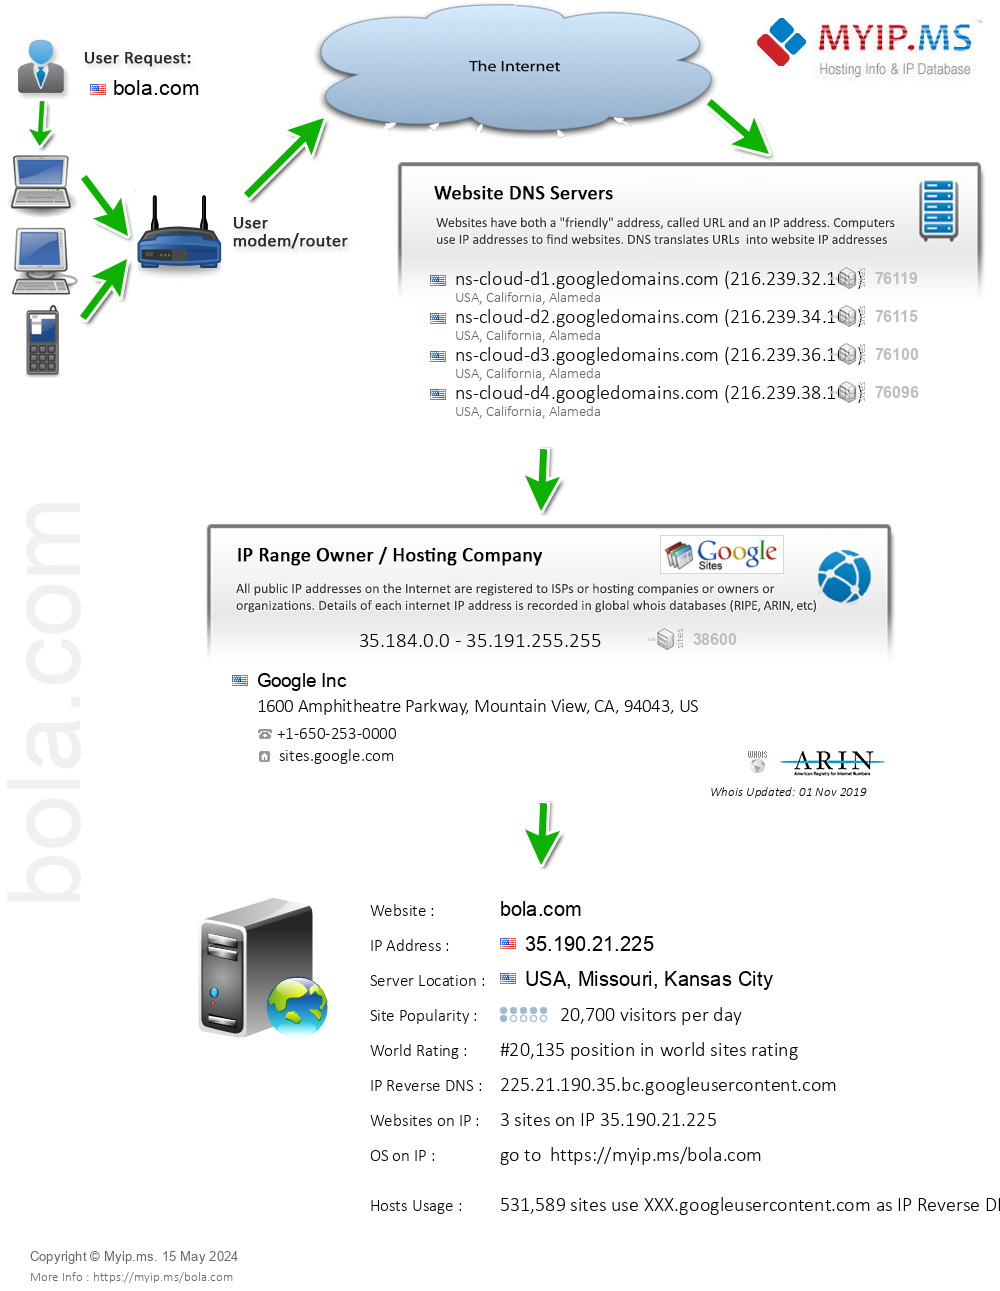 Bola.com - Website Hosting Visual IP Diagram